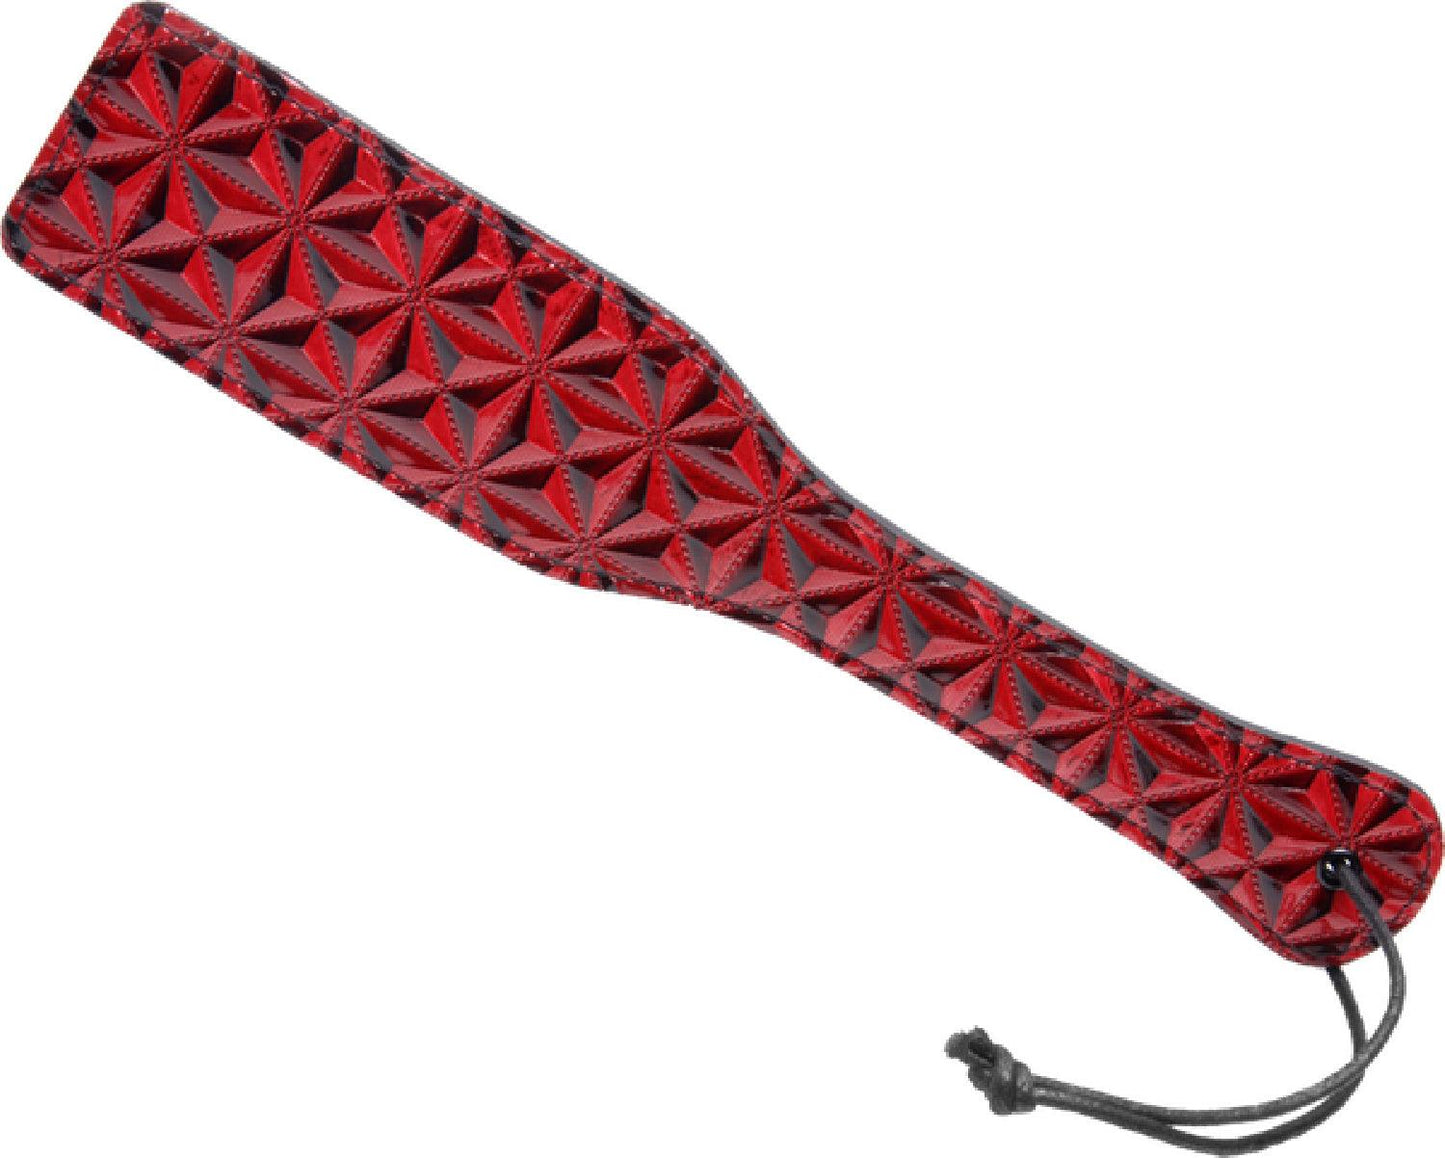 Crimson Tied Steel Enforced Spanking Paddle - Take A Peek